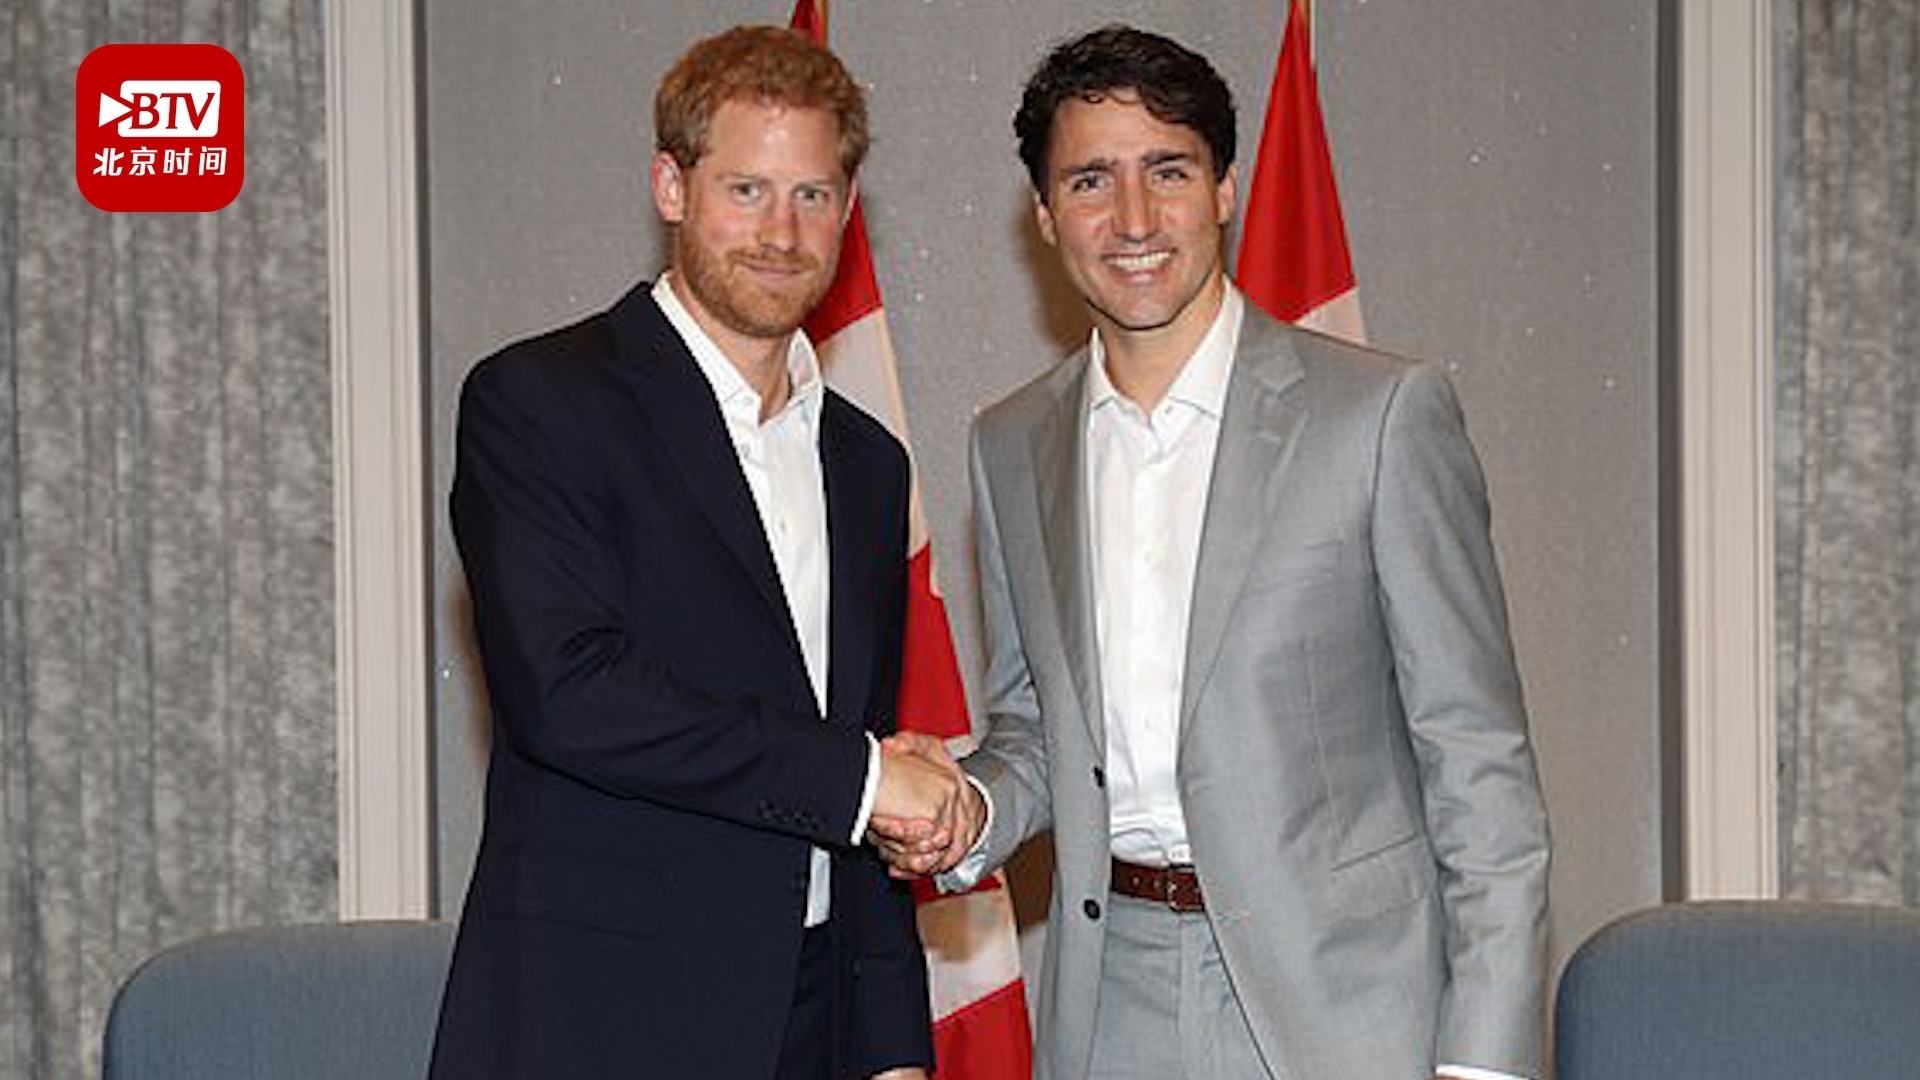 哈里王子要搬来加拿大 加总理表示承担50万英镑安保费引纳税人不满